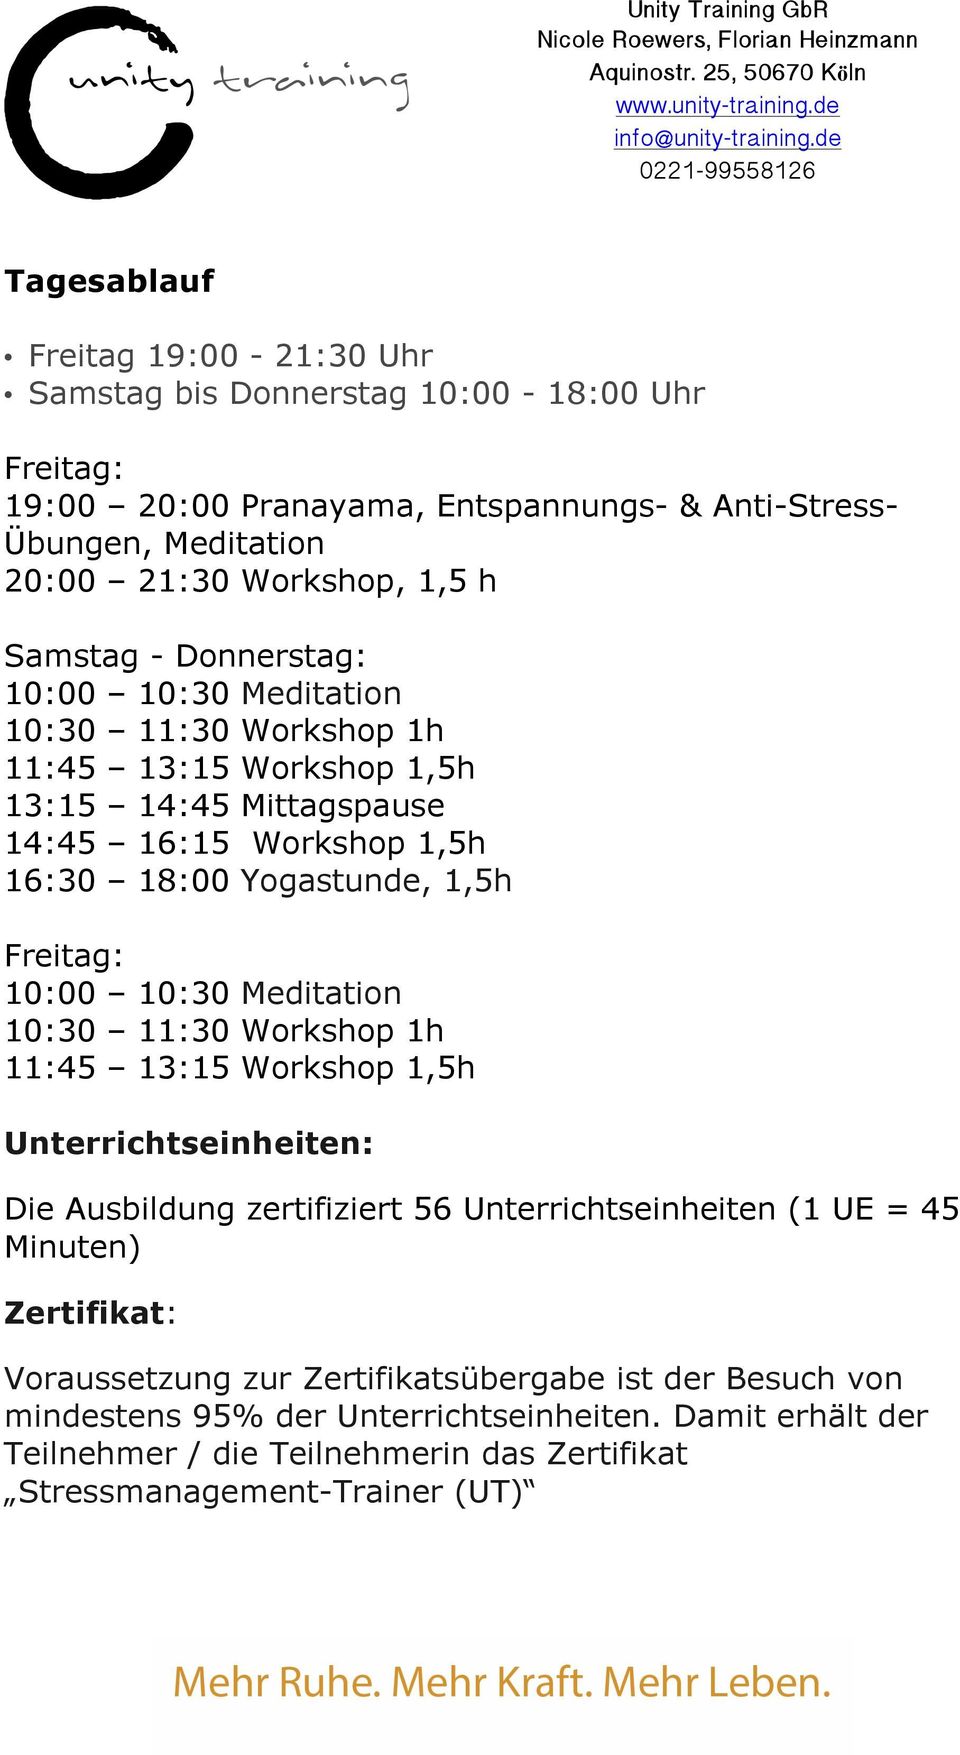 10:00 10:30 Meditation 10:30 11:30 Workshop 1h 11:45 13:15 Workshop 1,5h Unterrichtseinheiten: Die Ausbildung zertifiziert 56 Unterrichtseinheiten (1 UE = 45 Minuten) Zertifikat: